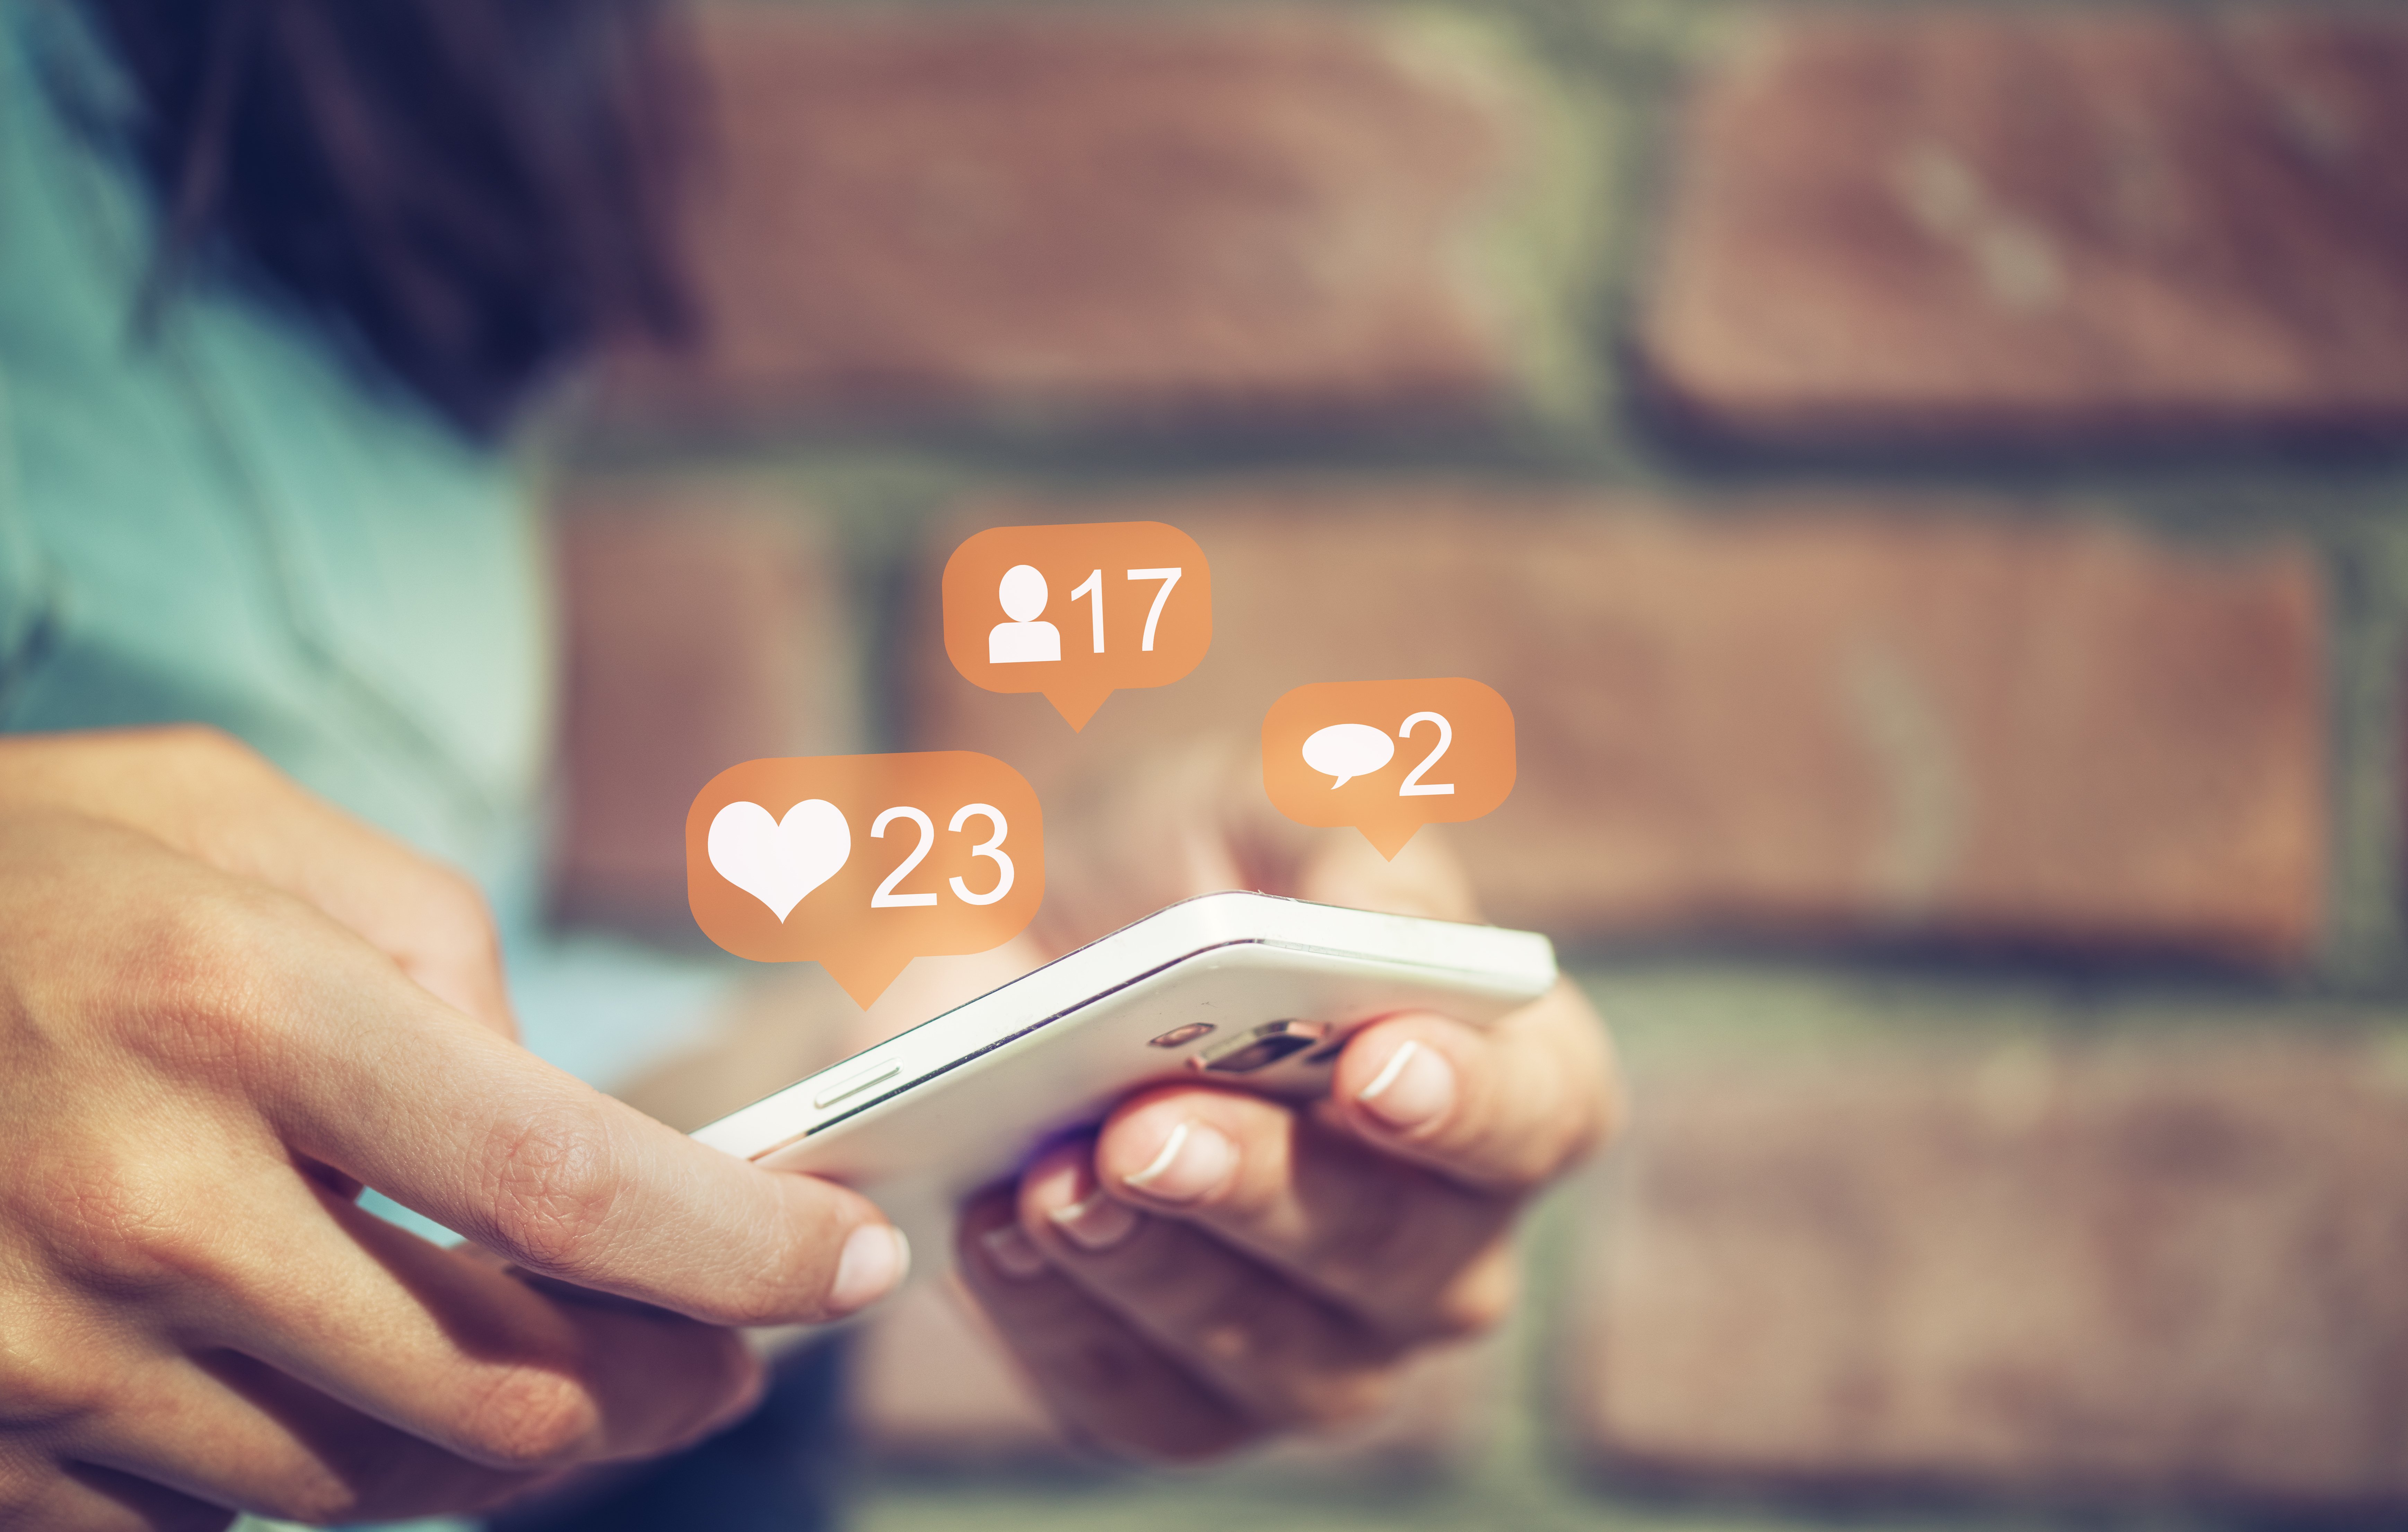 social media trends for 2022